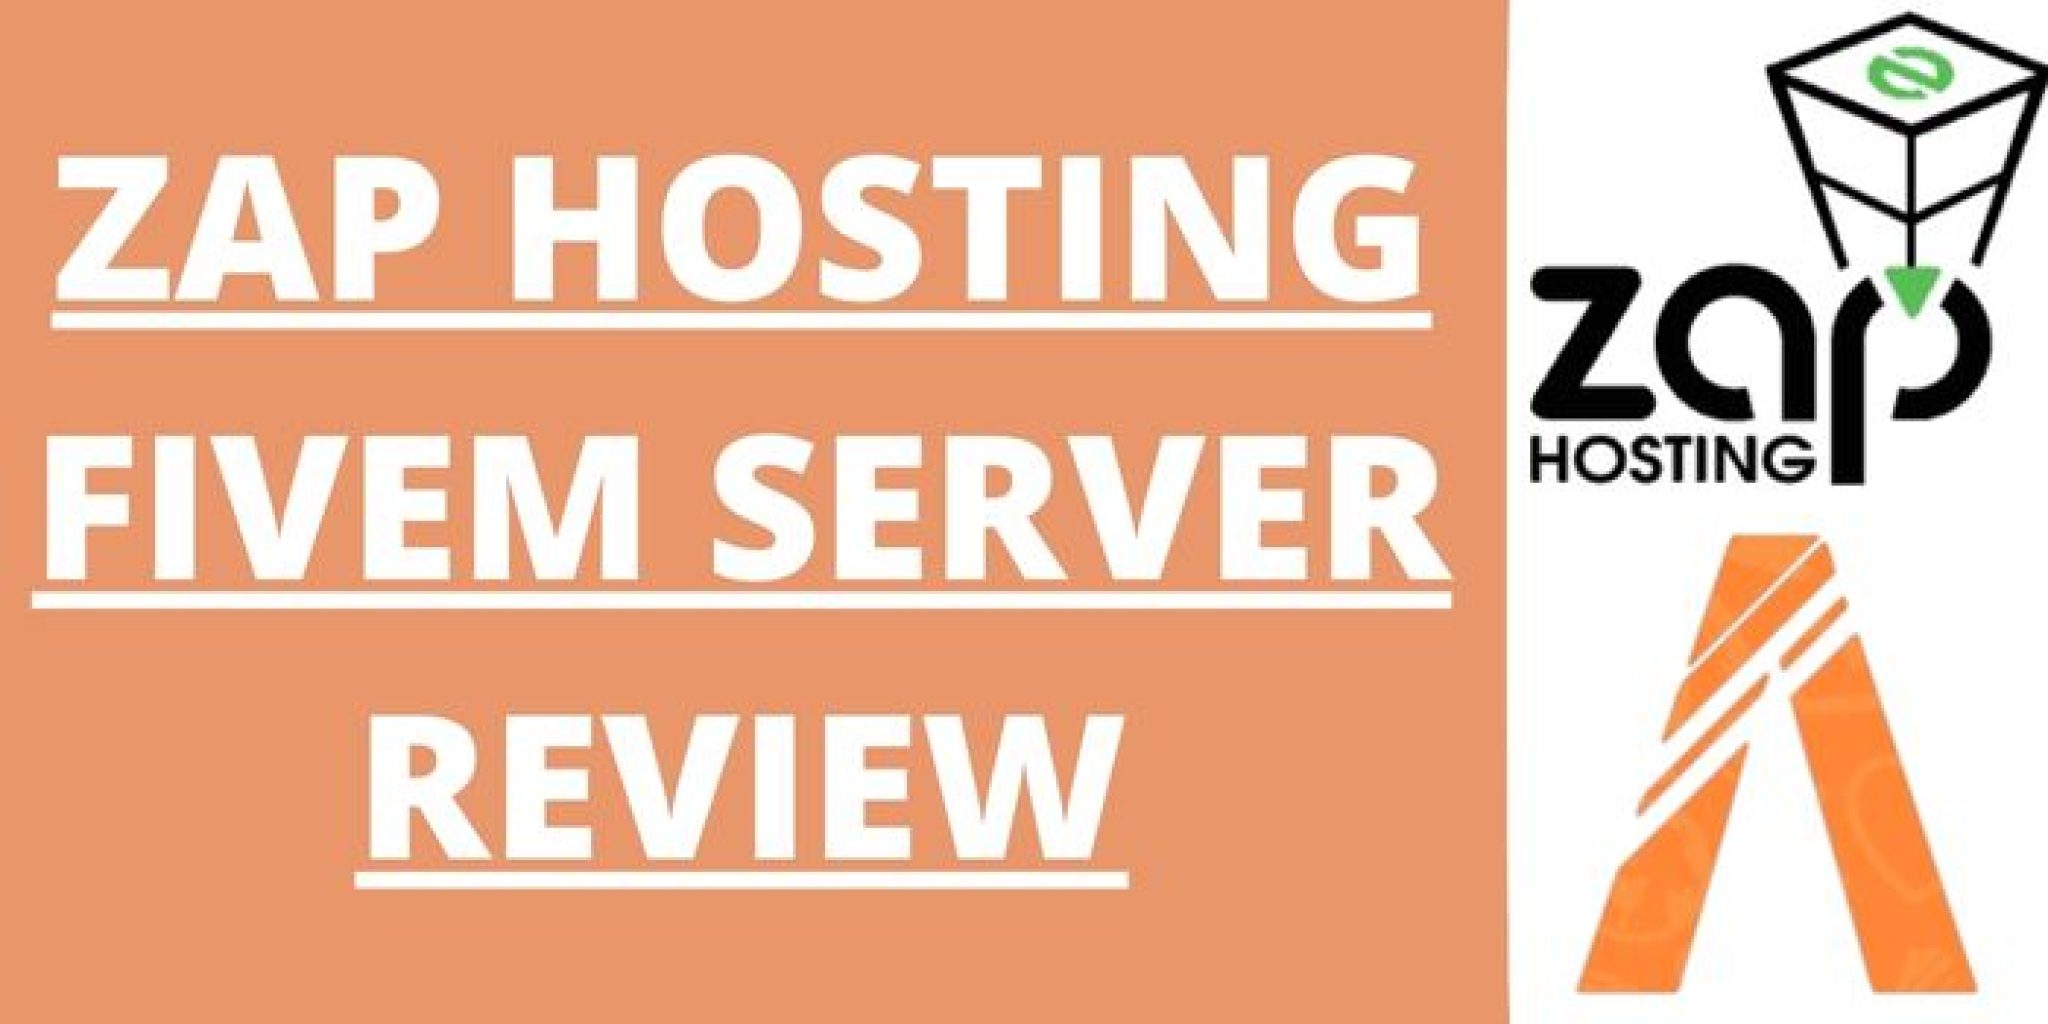 Zap Hosting FiveM Server Review 1 2048x1024 